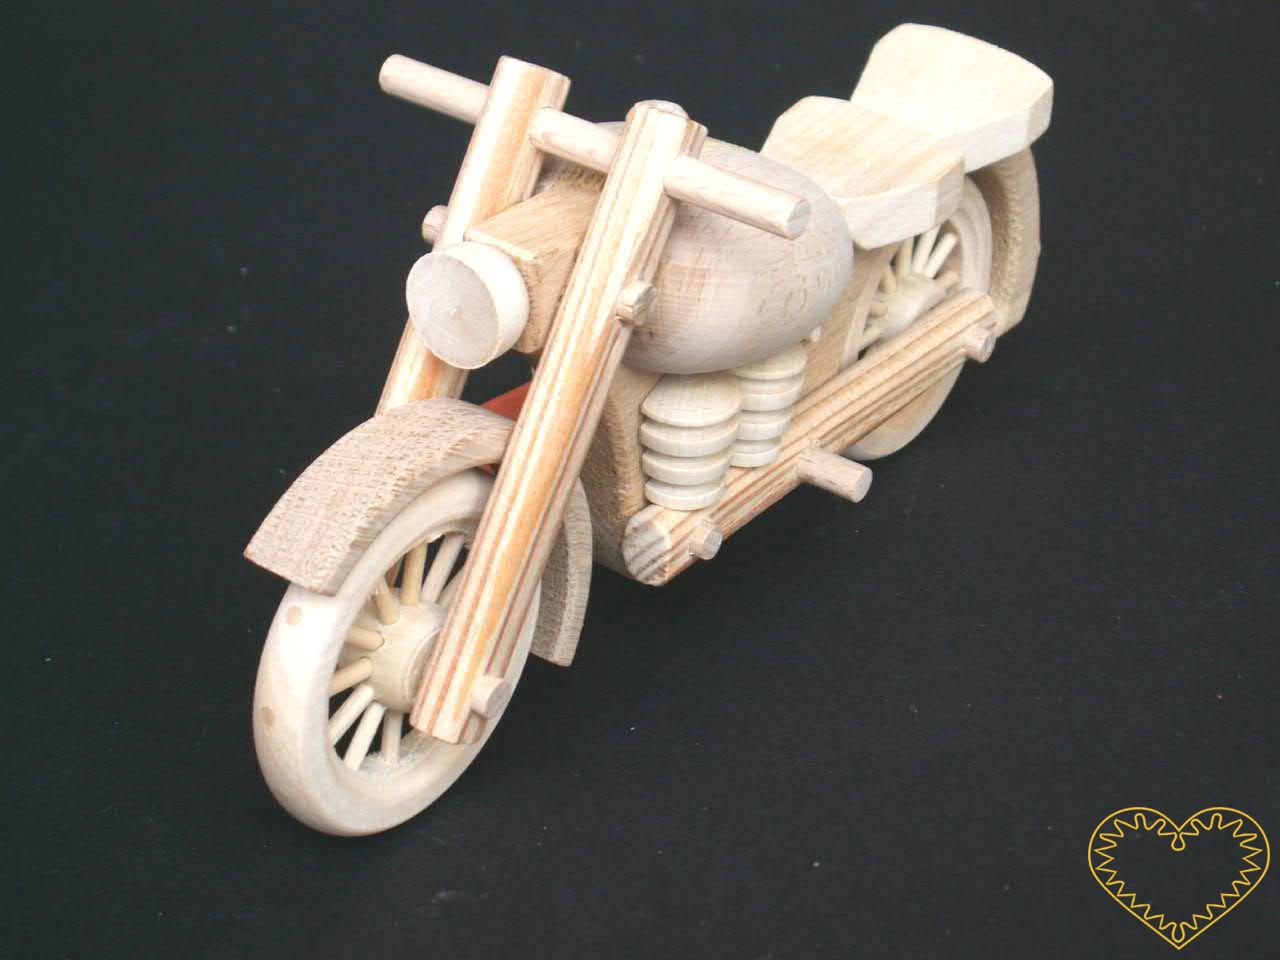 Dřevěná motorka - celodřevěný pojízdný model s drobnými detaily a krásně vypracovanými koly.